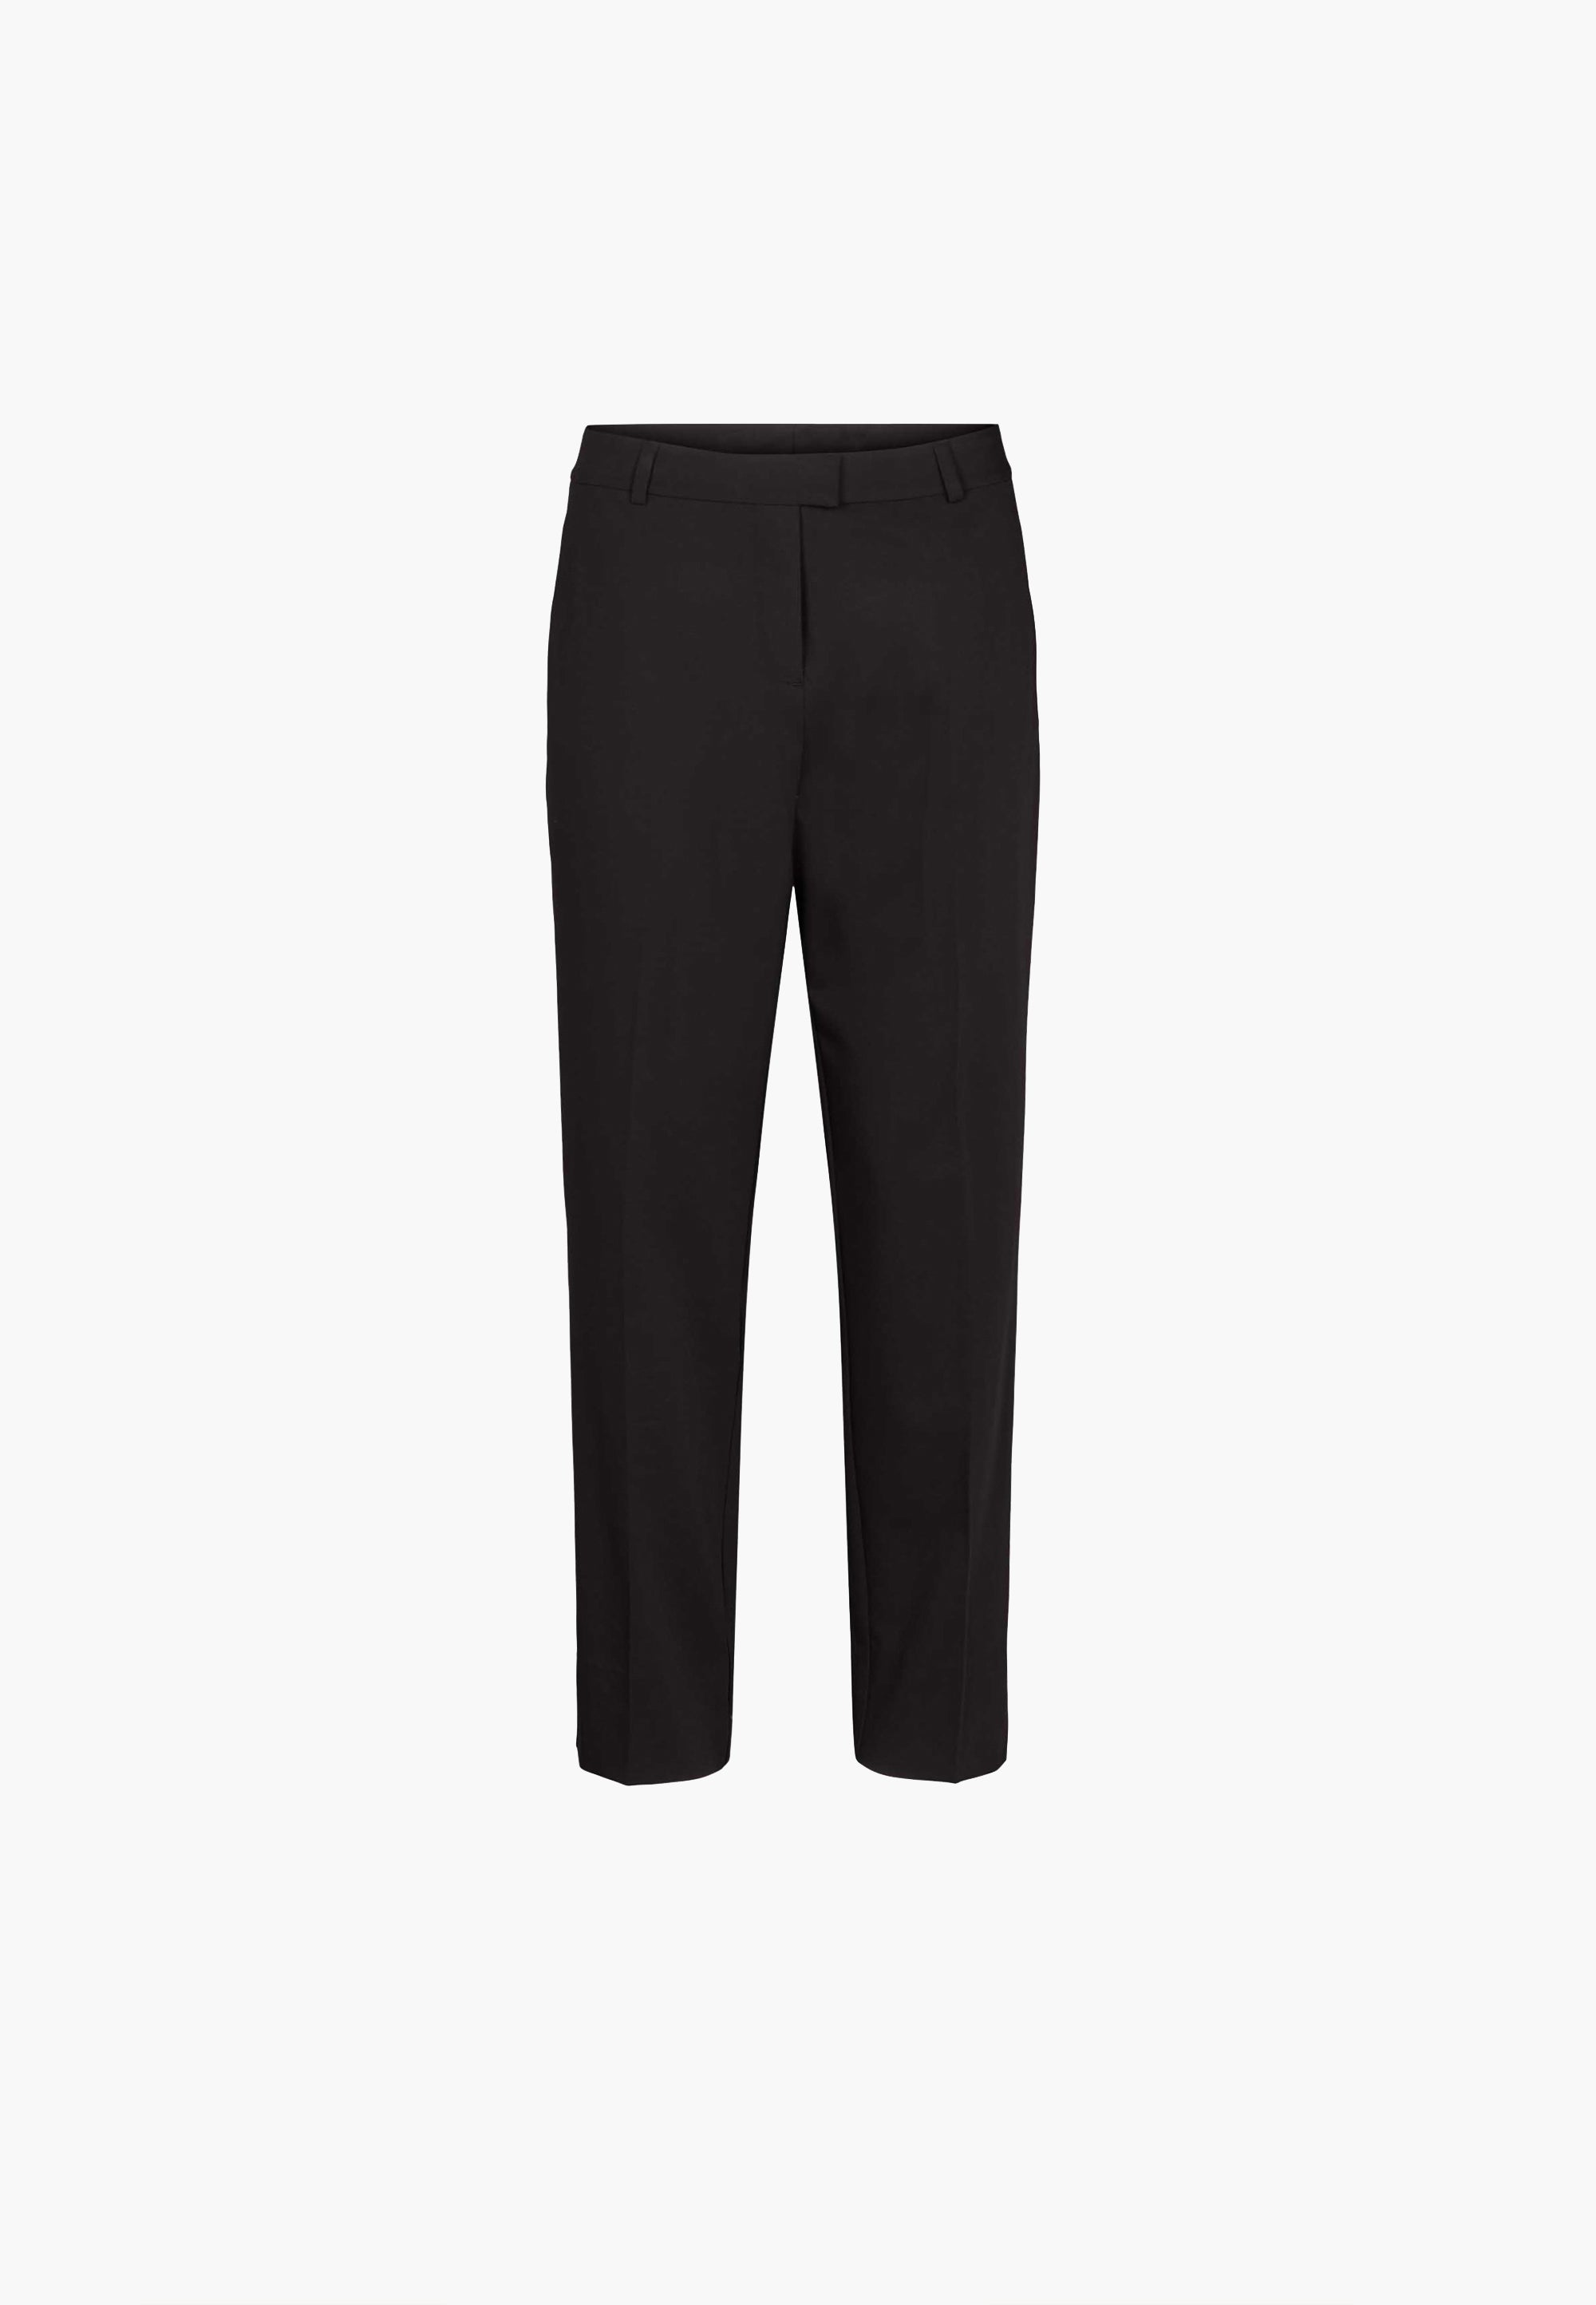 LAURIE  Julianne Pipe Regular - Short Length Trousers REGULAR 99000 Black